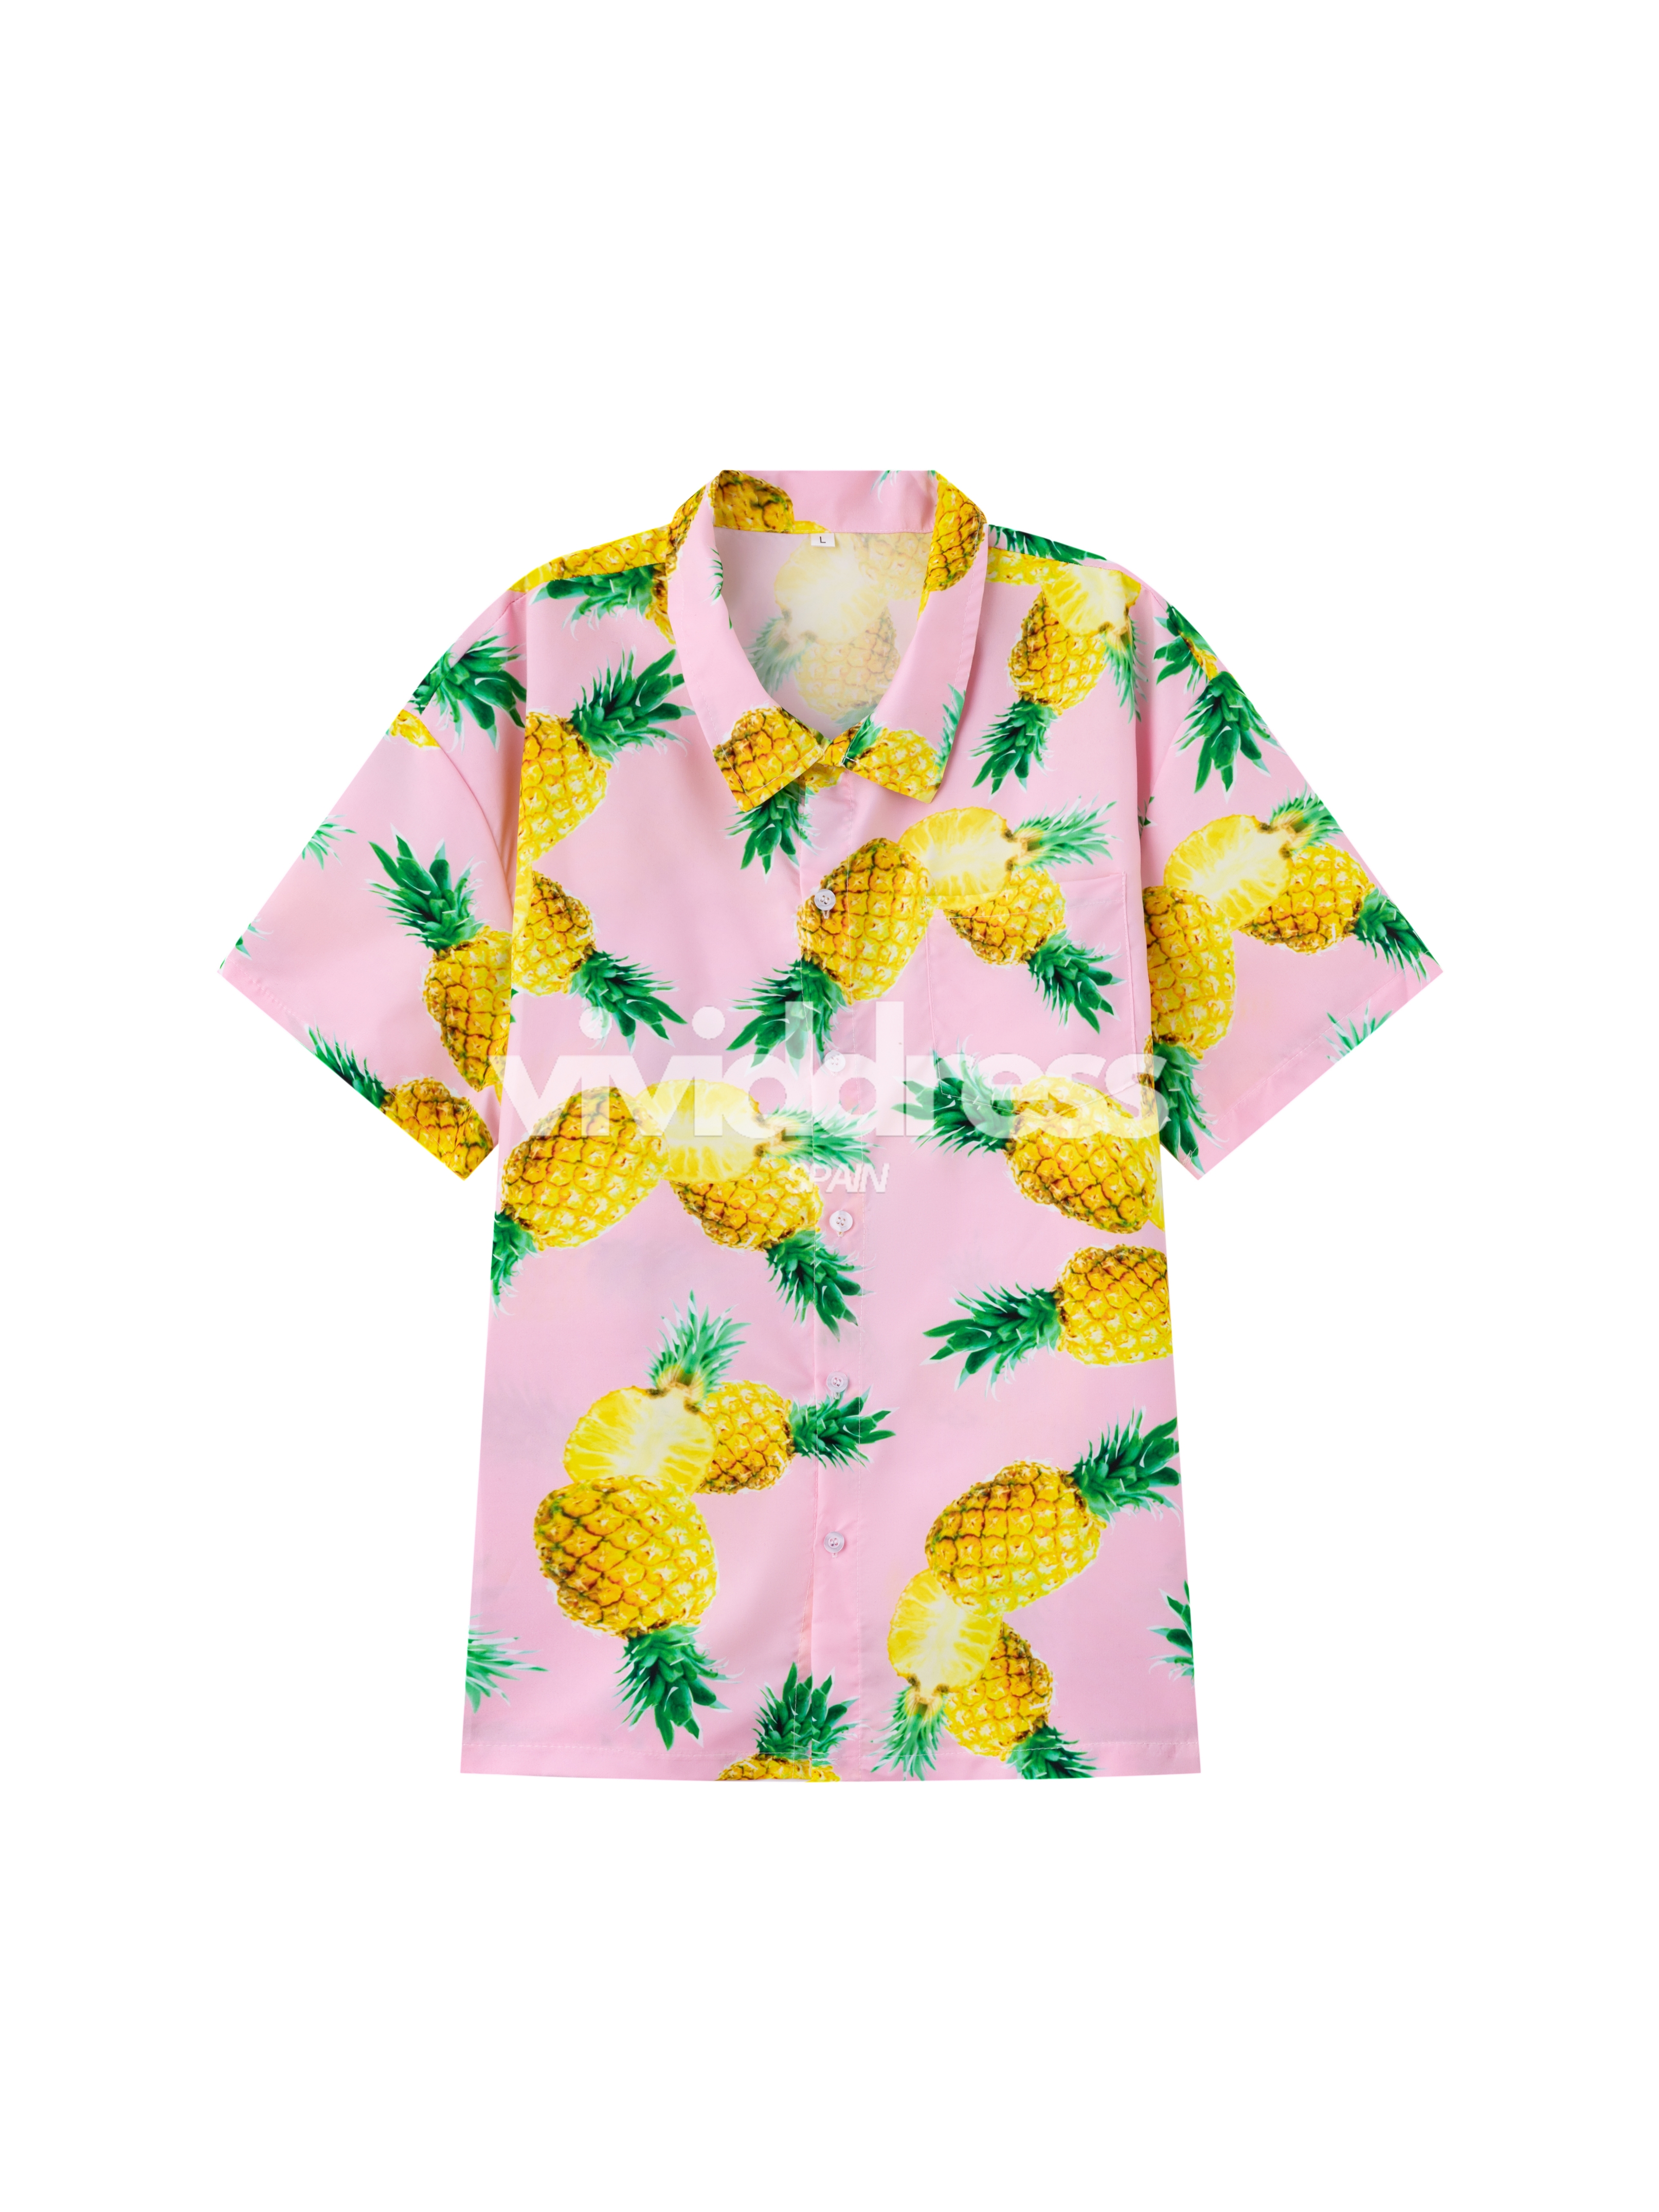 Men's Pineapple Print Beach Summer Holiday Short Sleeve Shirt